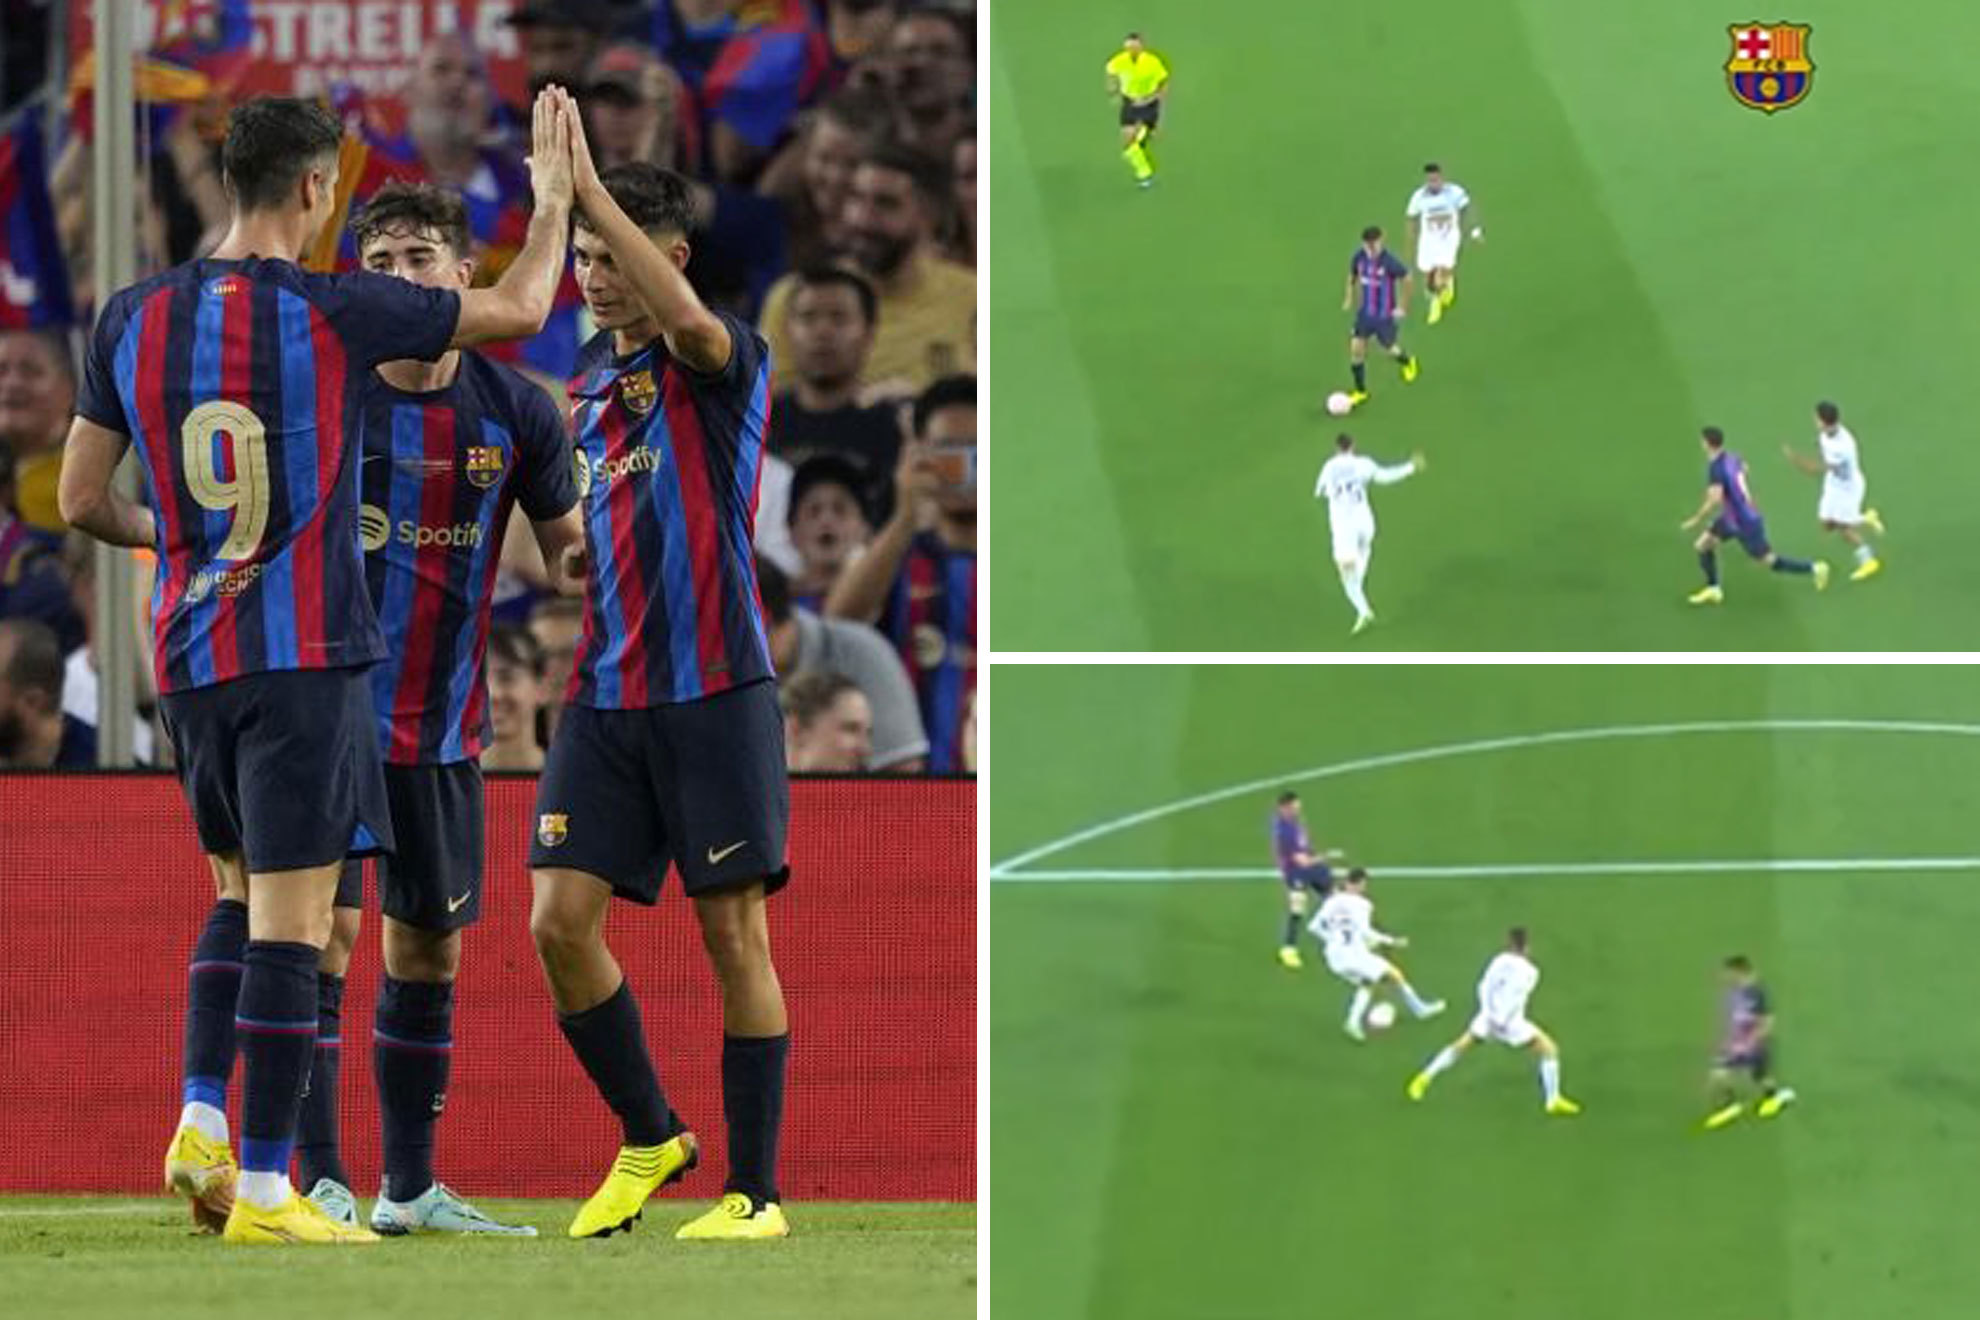 La conexión Pedri-Lewandowski ya hace soñar al Camp Nou: ¡tres goles 'tuya-mía' en 18 minutos!